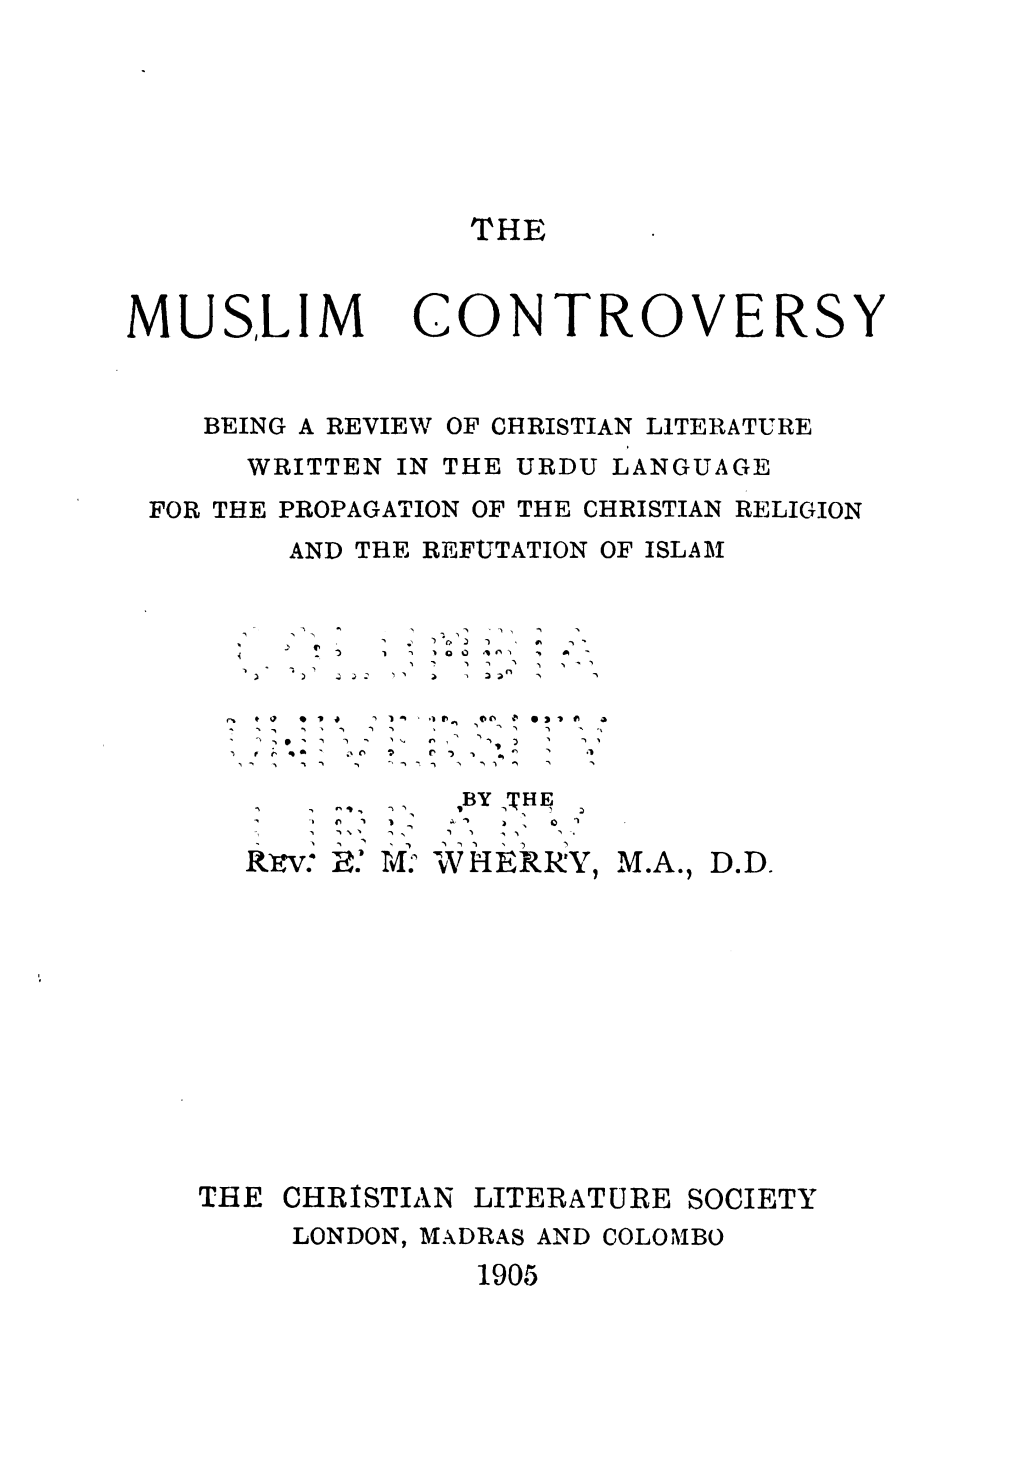 The Muslim Controversy